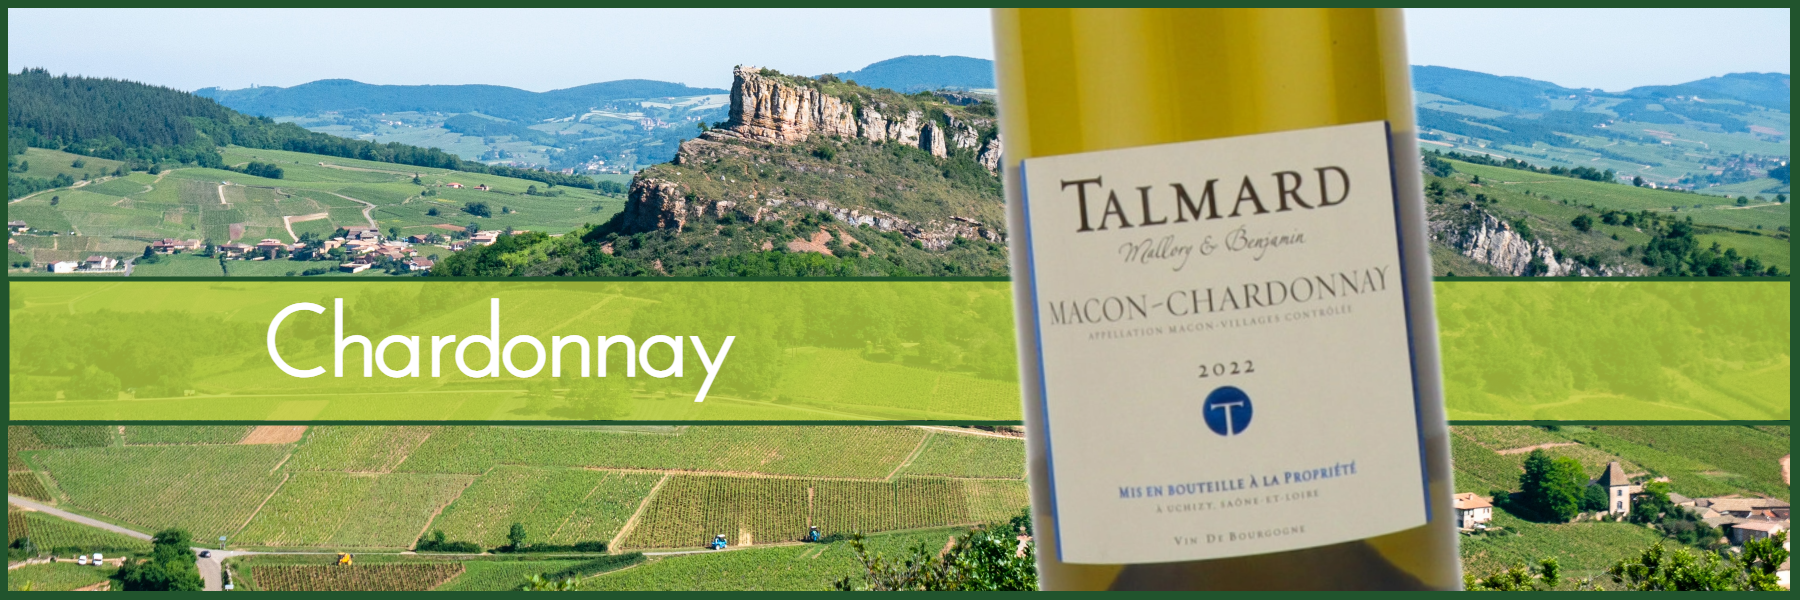 Buy Talmard Macon-Chardonnay £15/bottle from Frazier's Wine Merchants